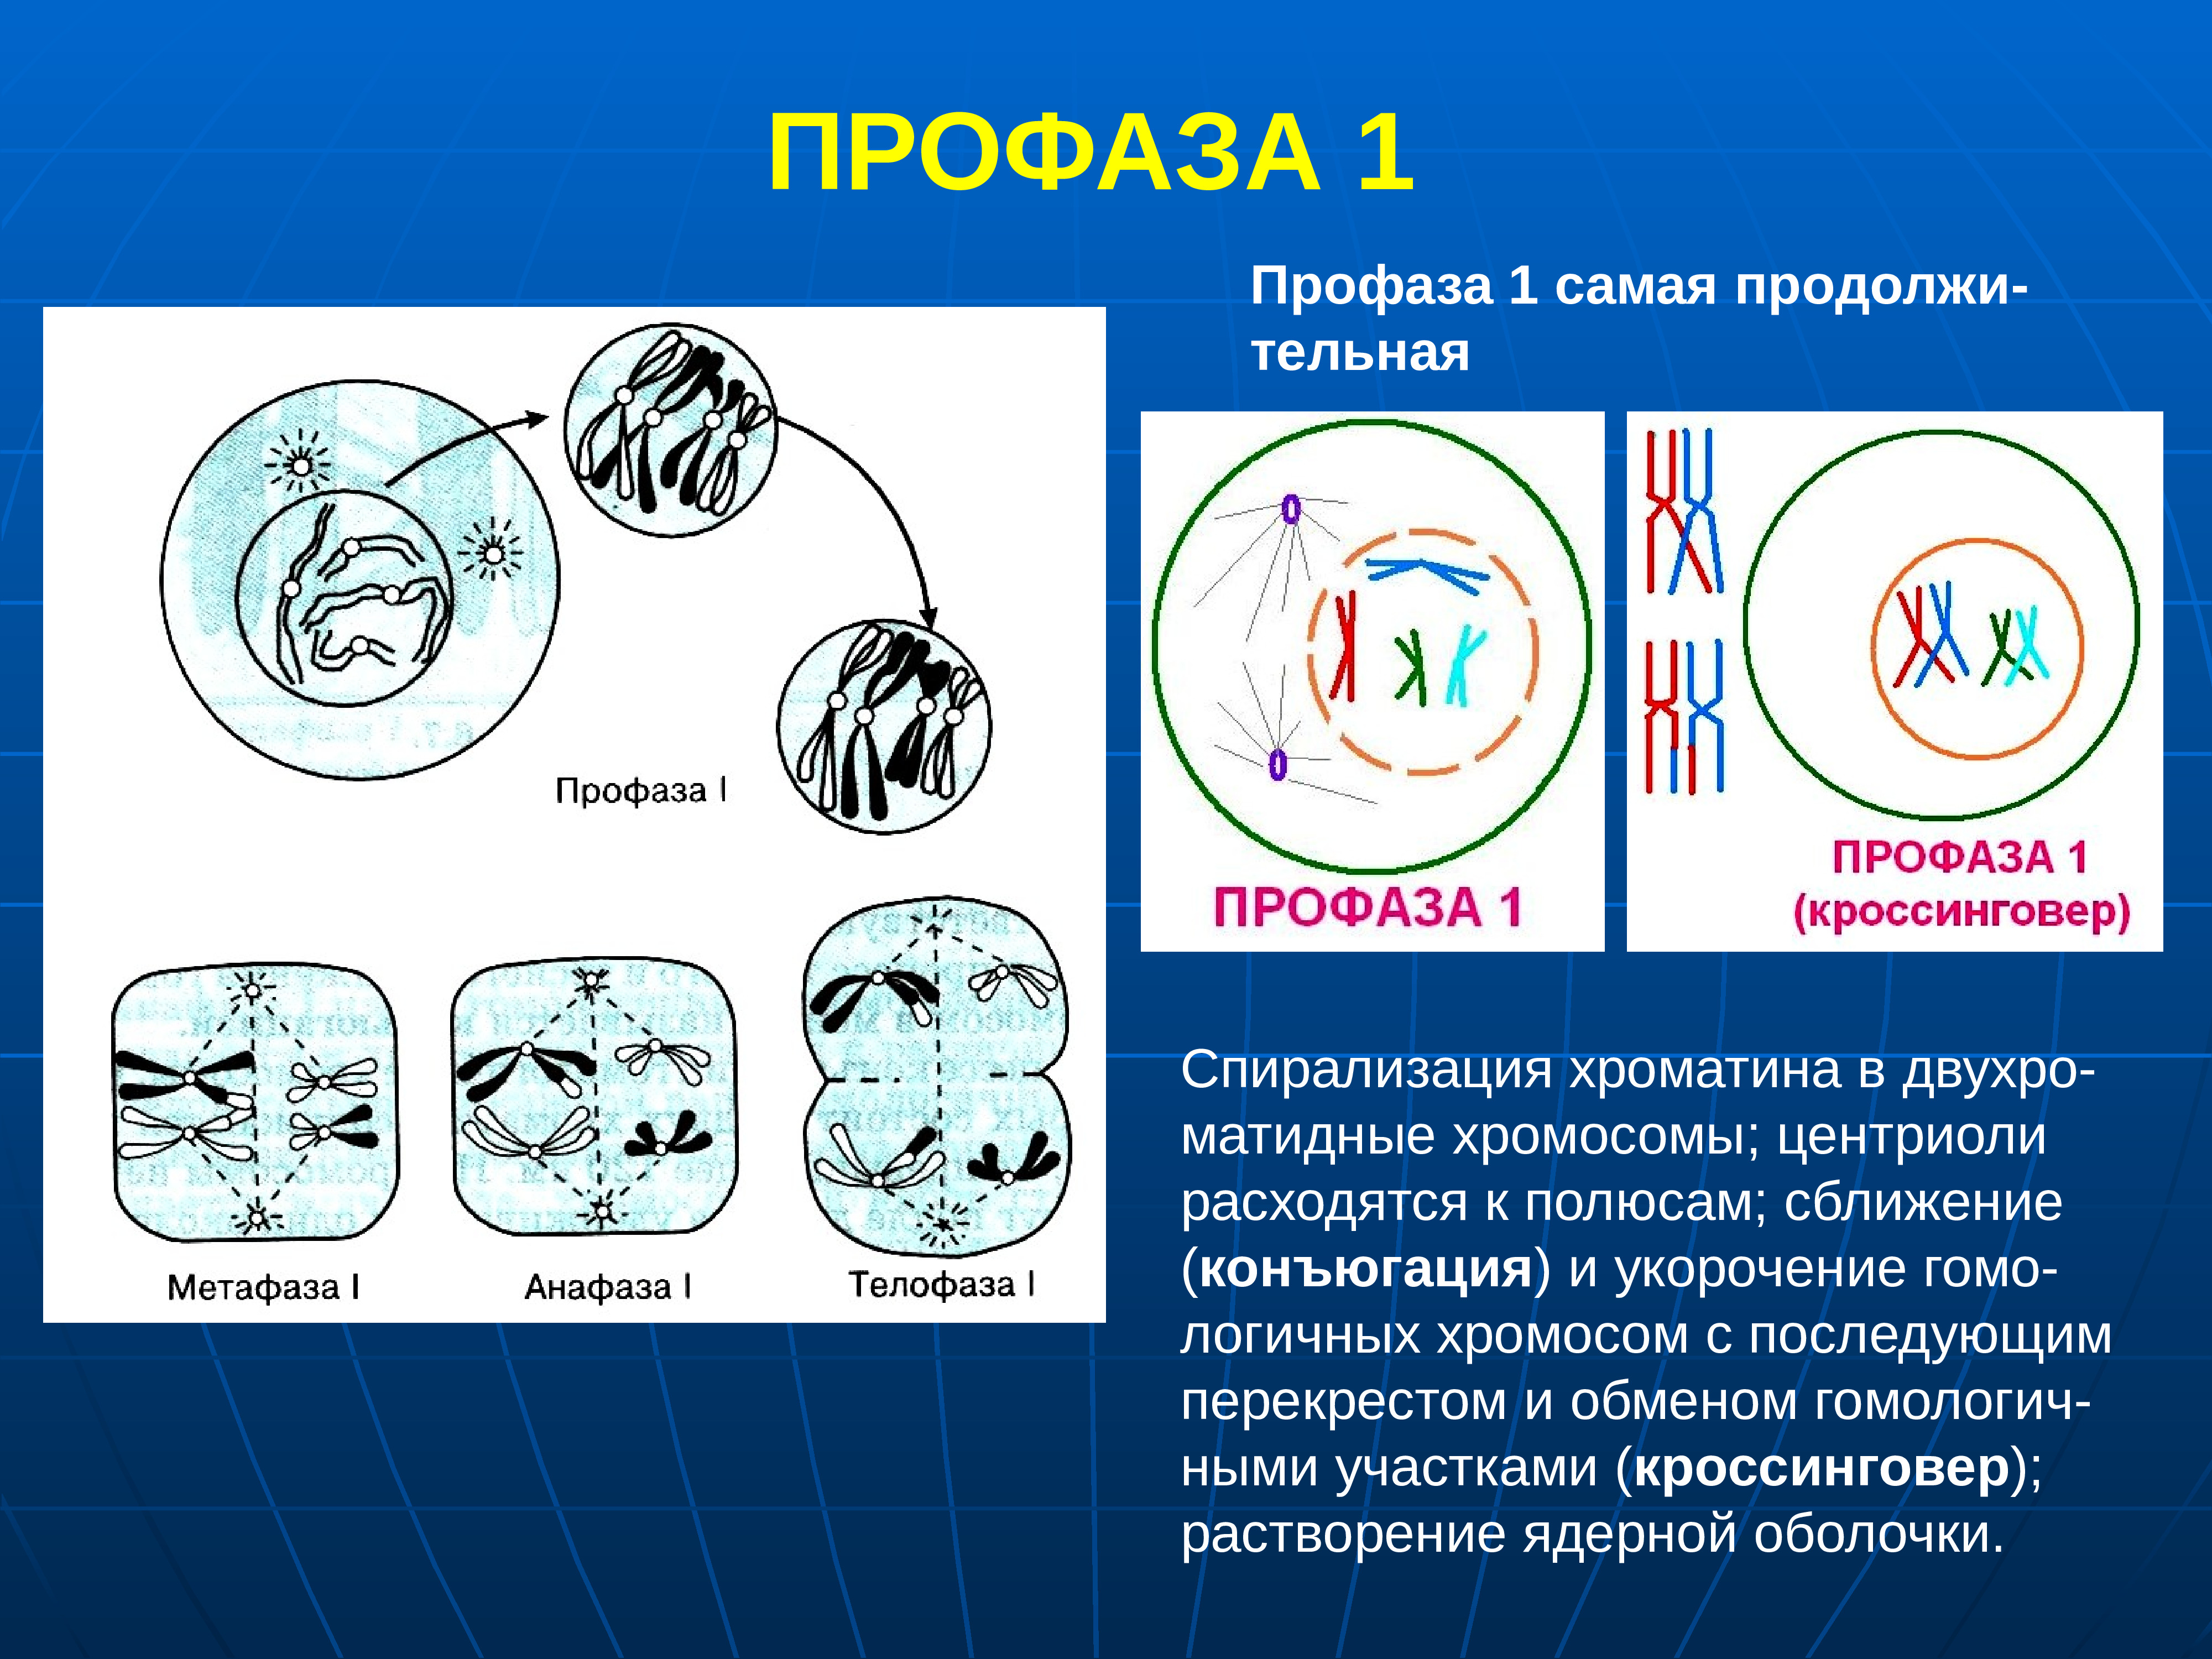 Образование двухроматидных хромосом спирализация хромосом. Мейоз профаза 1 процессы. Профаза лептотена. Профаза первого деления мейоза процессы. Первое деление мейоза профаза 1.